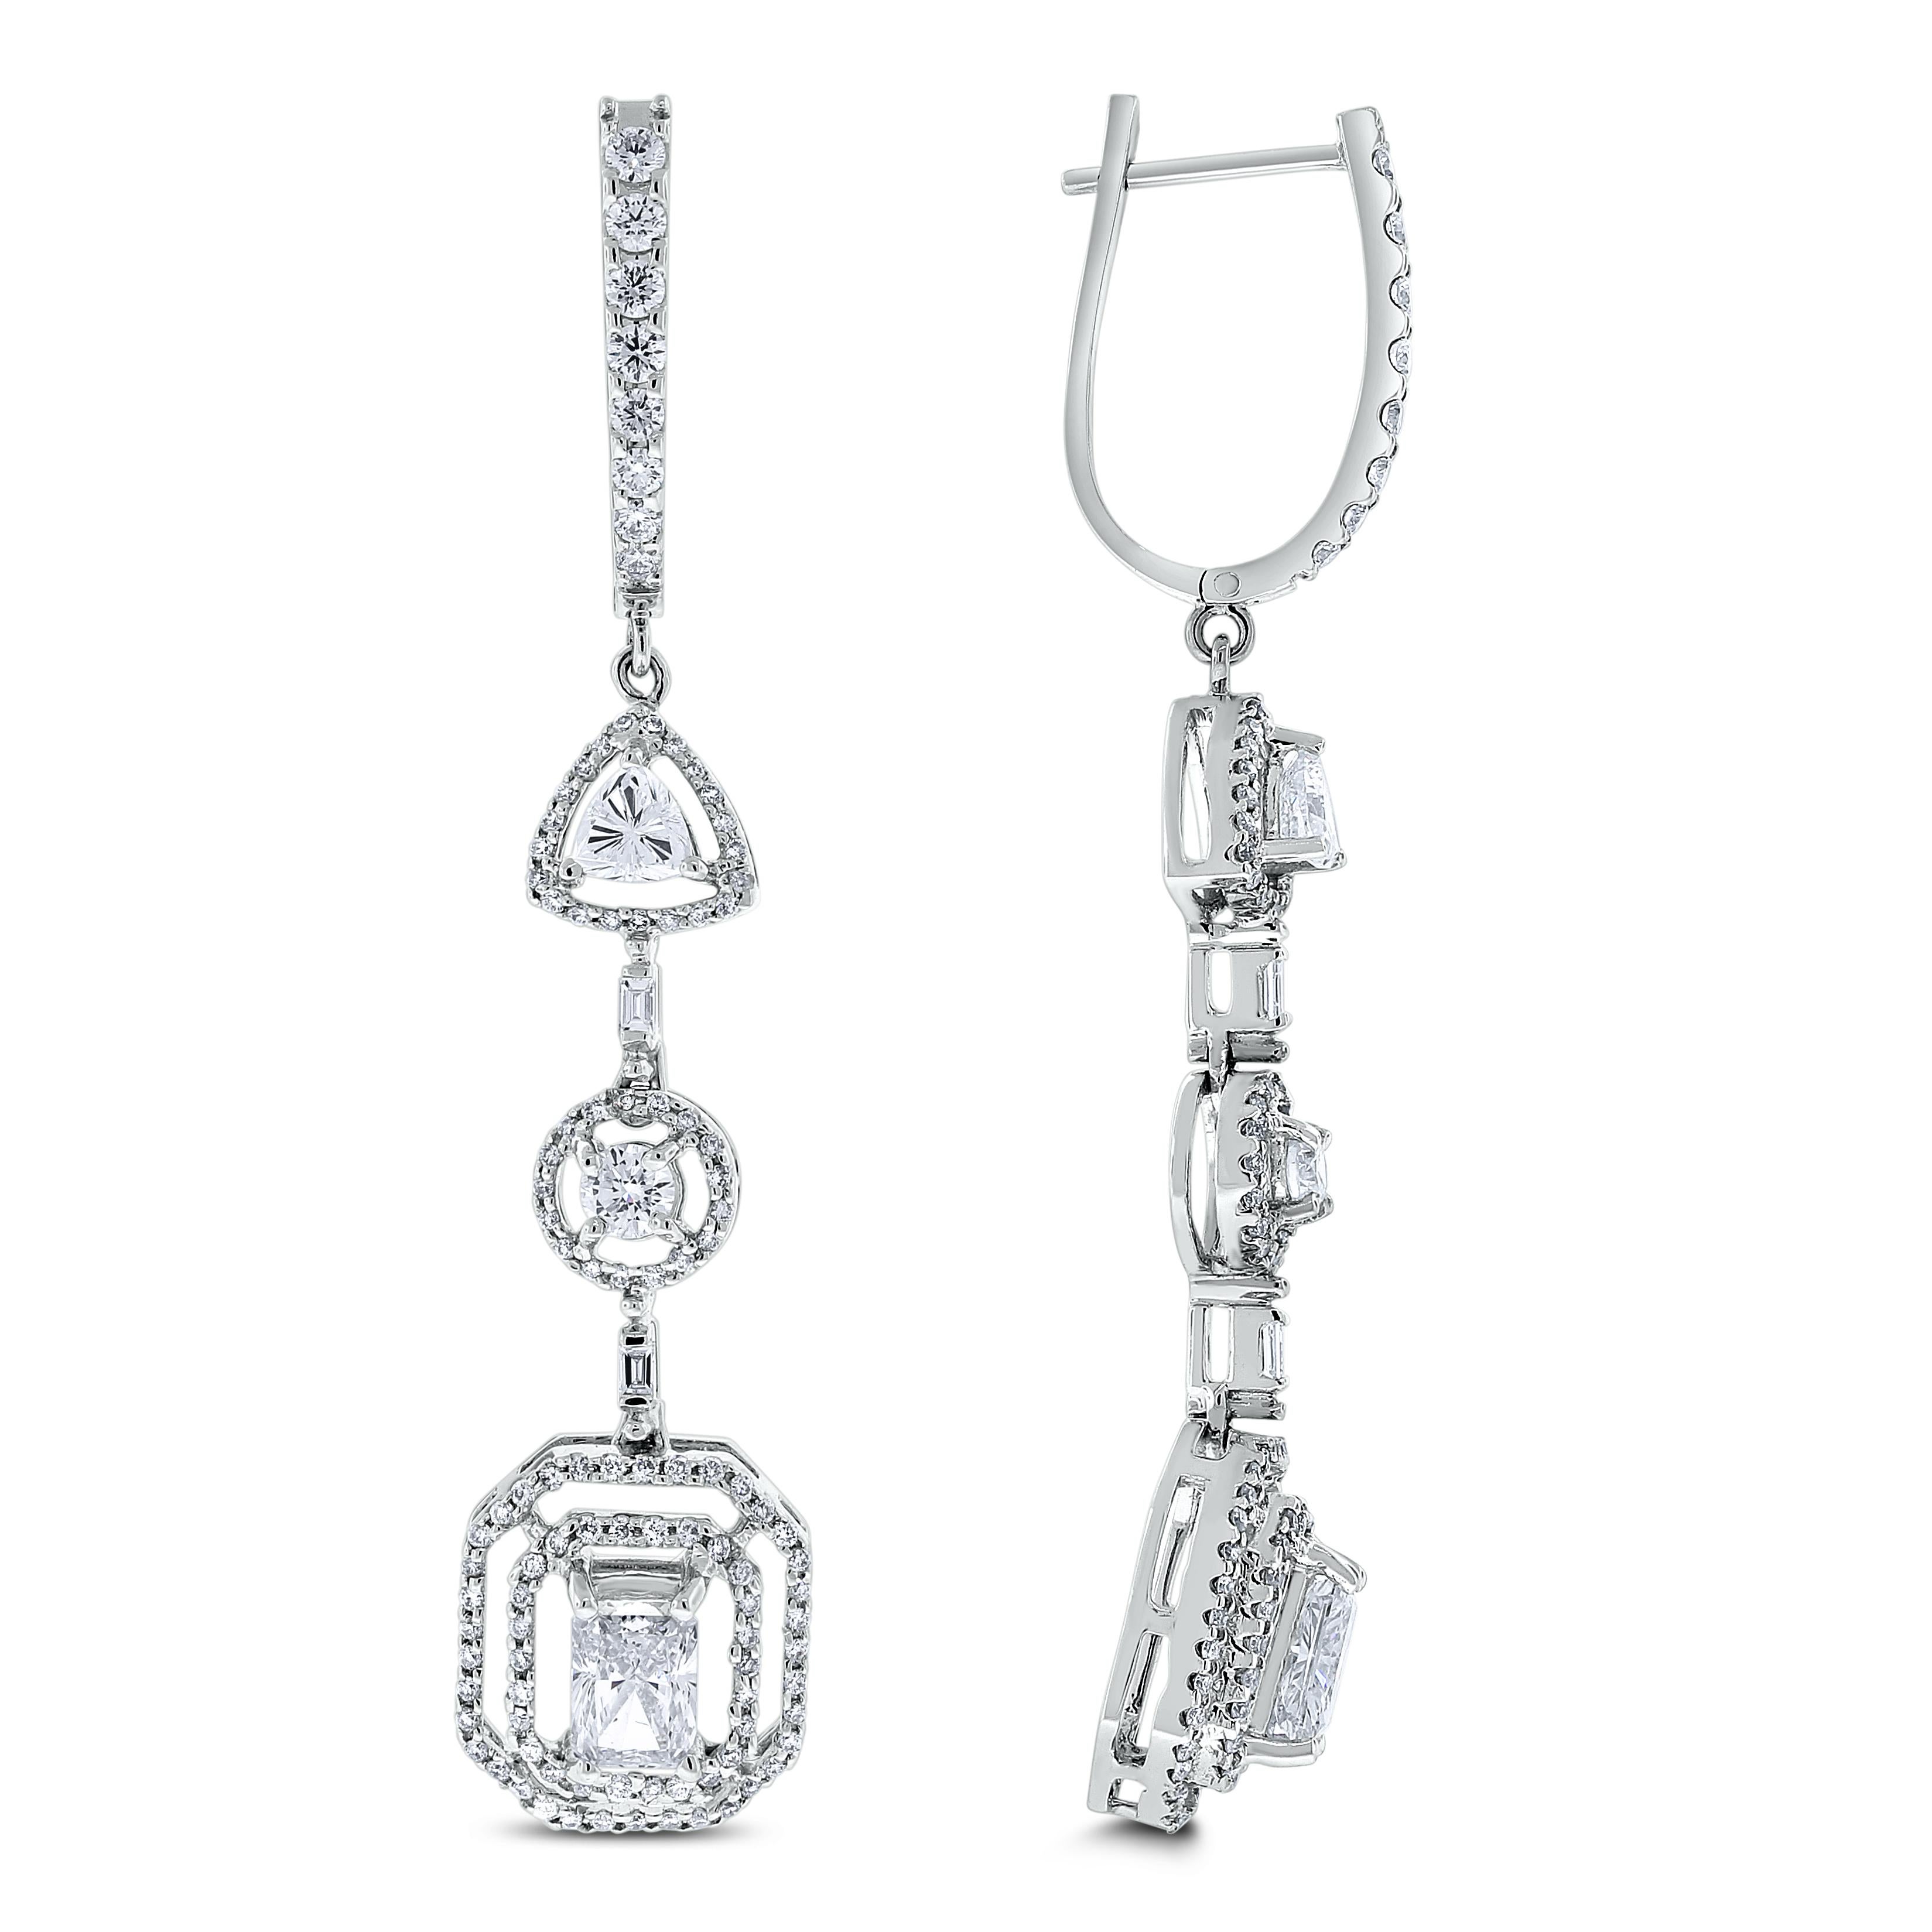 Die Beauvince Sansa Diamond Earrings sind zart und sinnlich, aber auch kühn und rätselhaft. Die wunderschönen baumelnden Ohrringe haben in der Mitte einen 3/4 Karat Diamanten im Radiant-Schliff. 

Formen von Diamanten: Radiant, Baguette, Trillion &